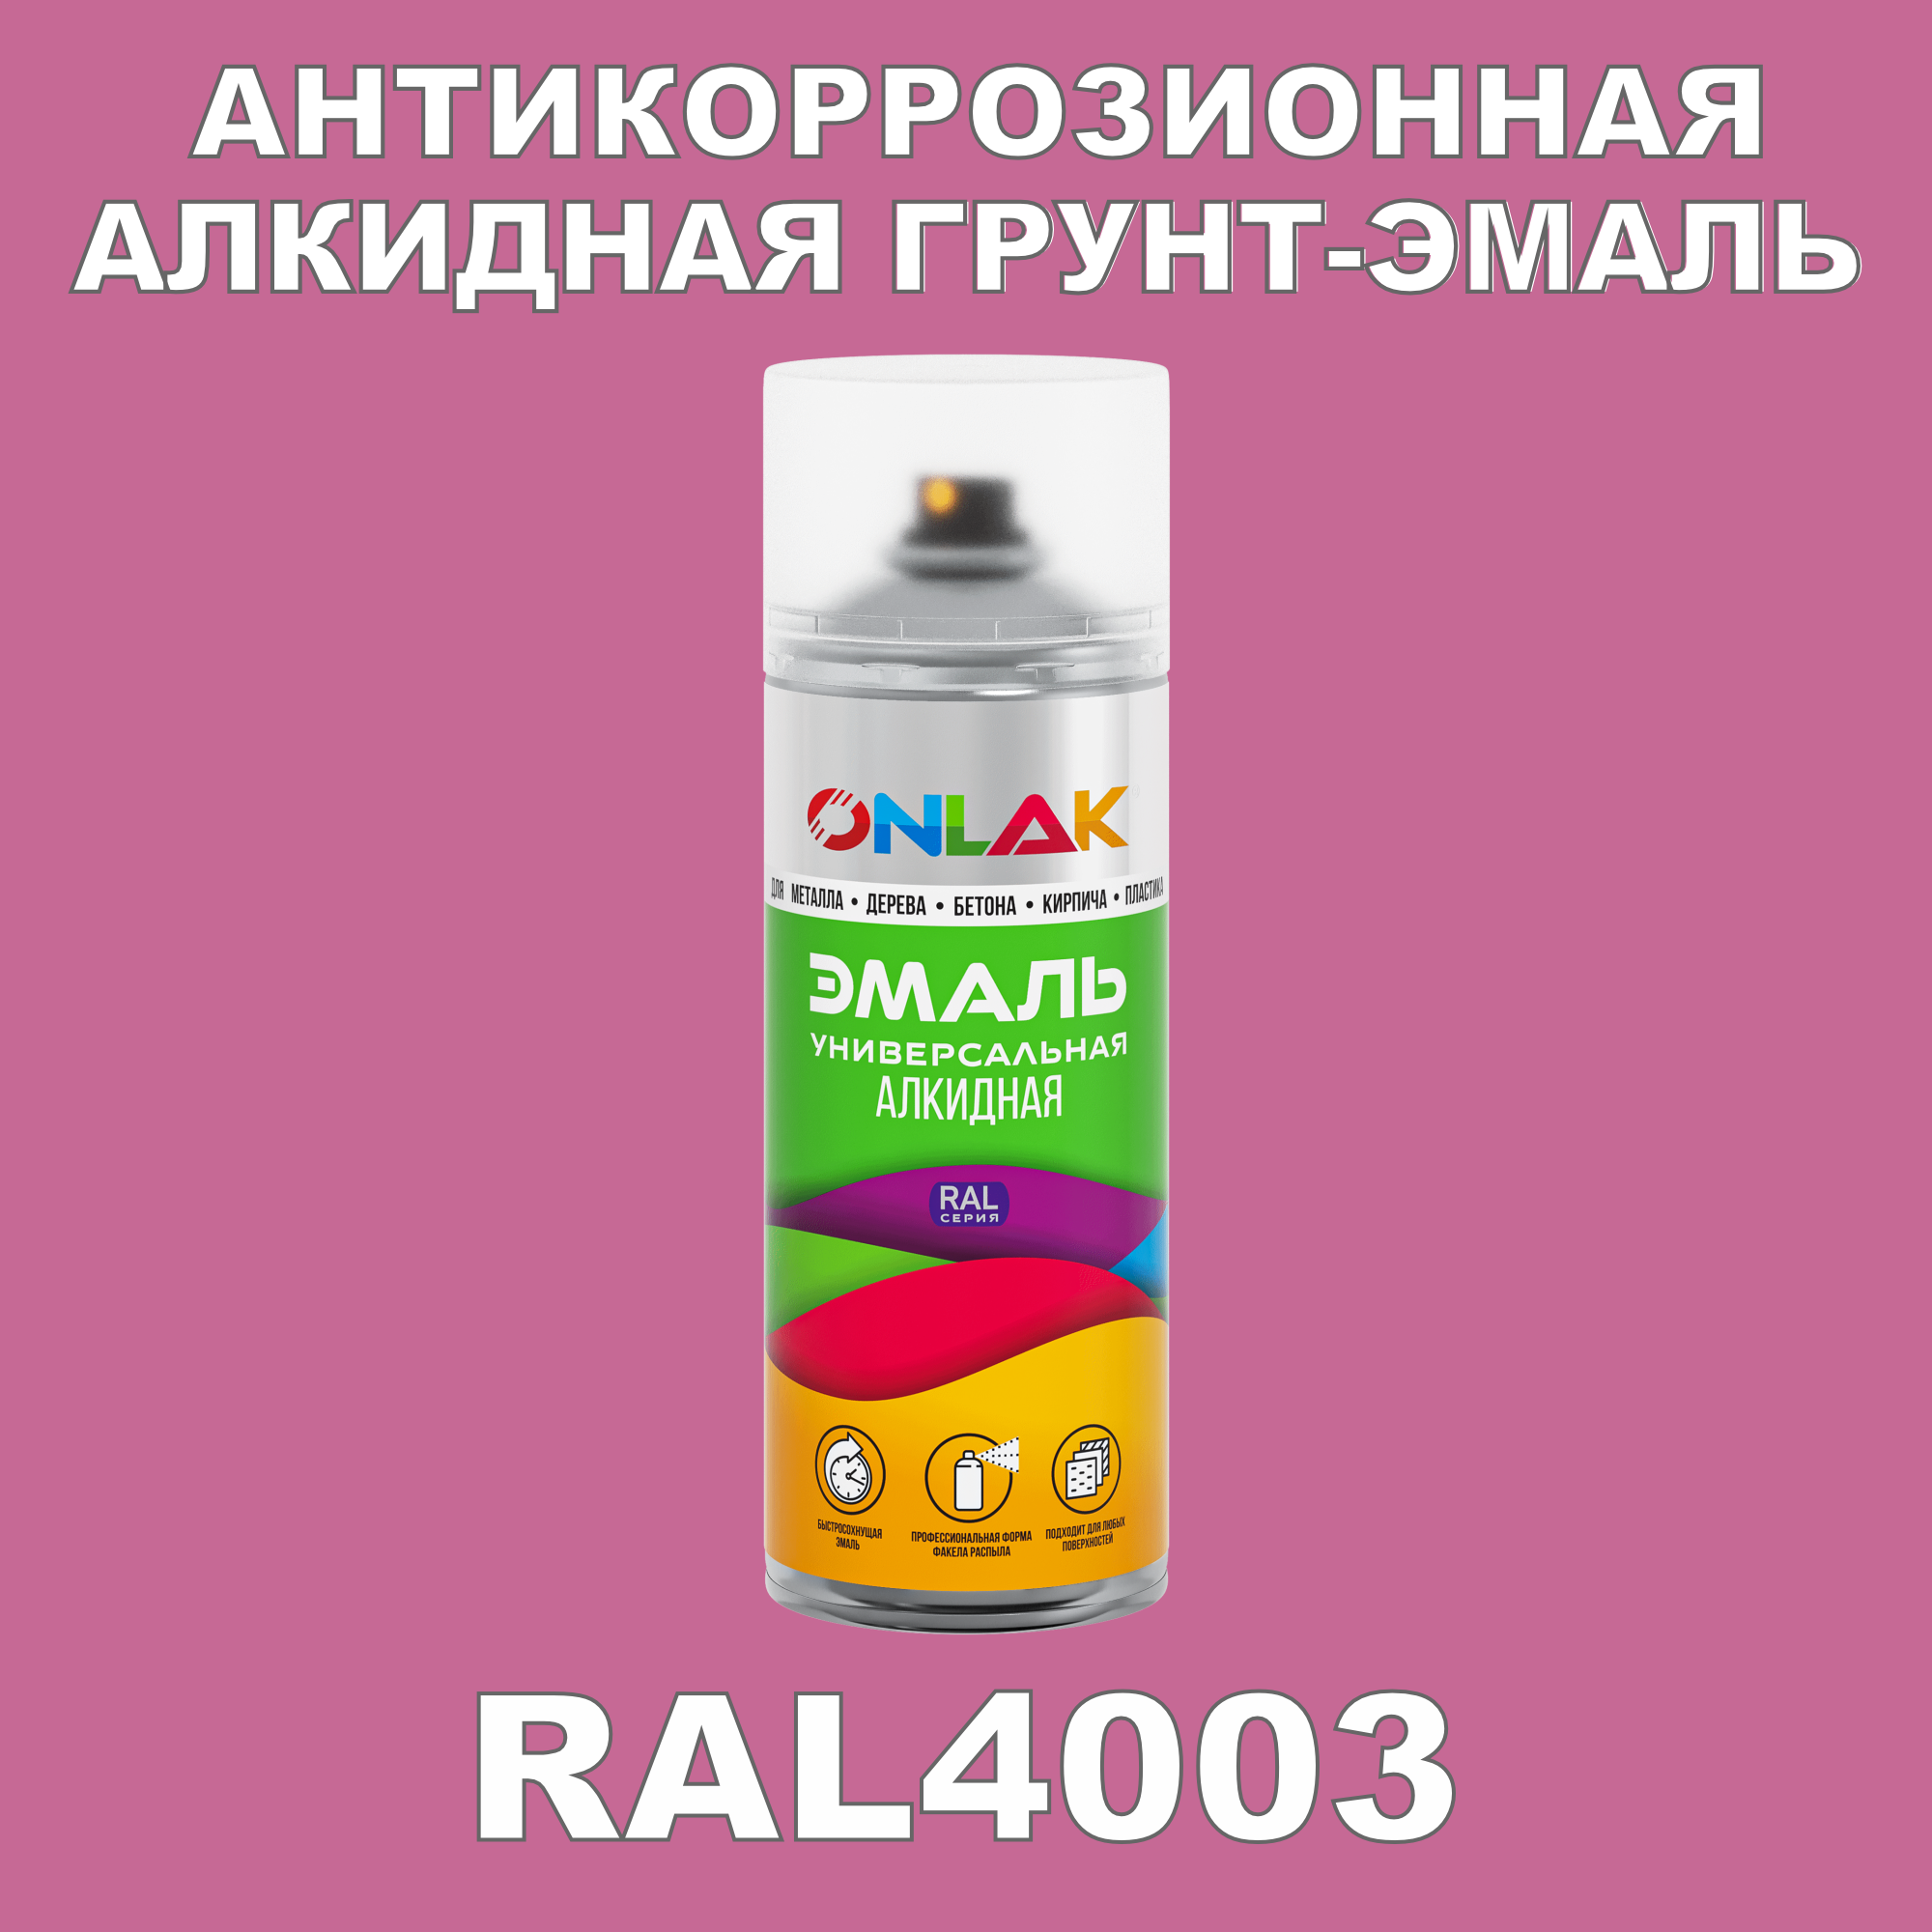 Антикоррозионная грунт-эмаль ONLAK RAL 4003,фиолетовый,542 мл рюкзак на молнии 2 наружных кармана фиолетовый